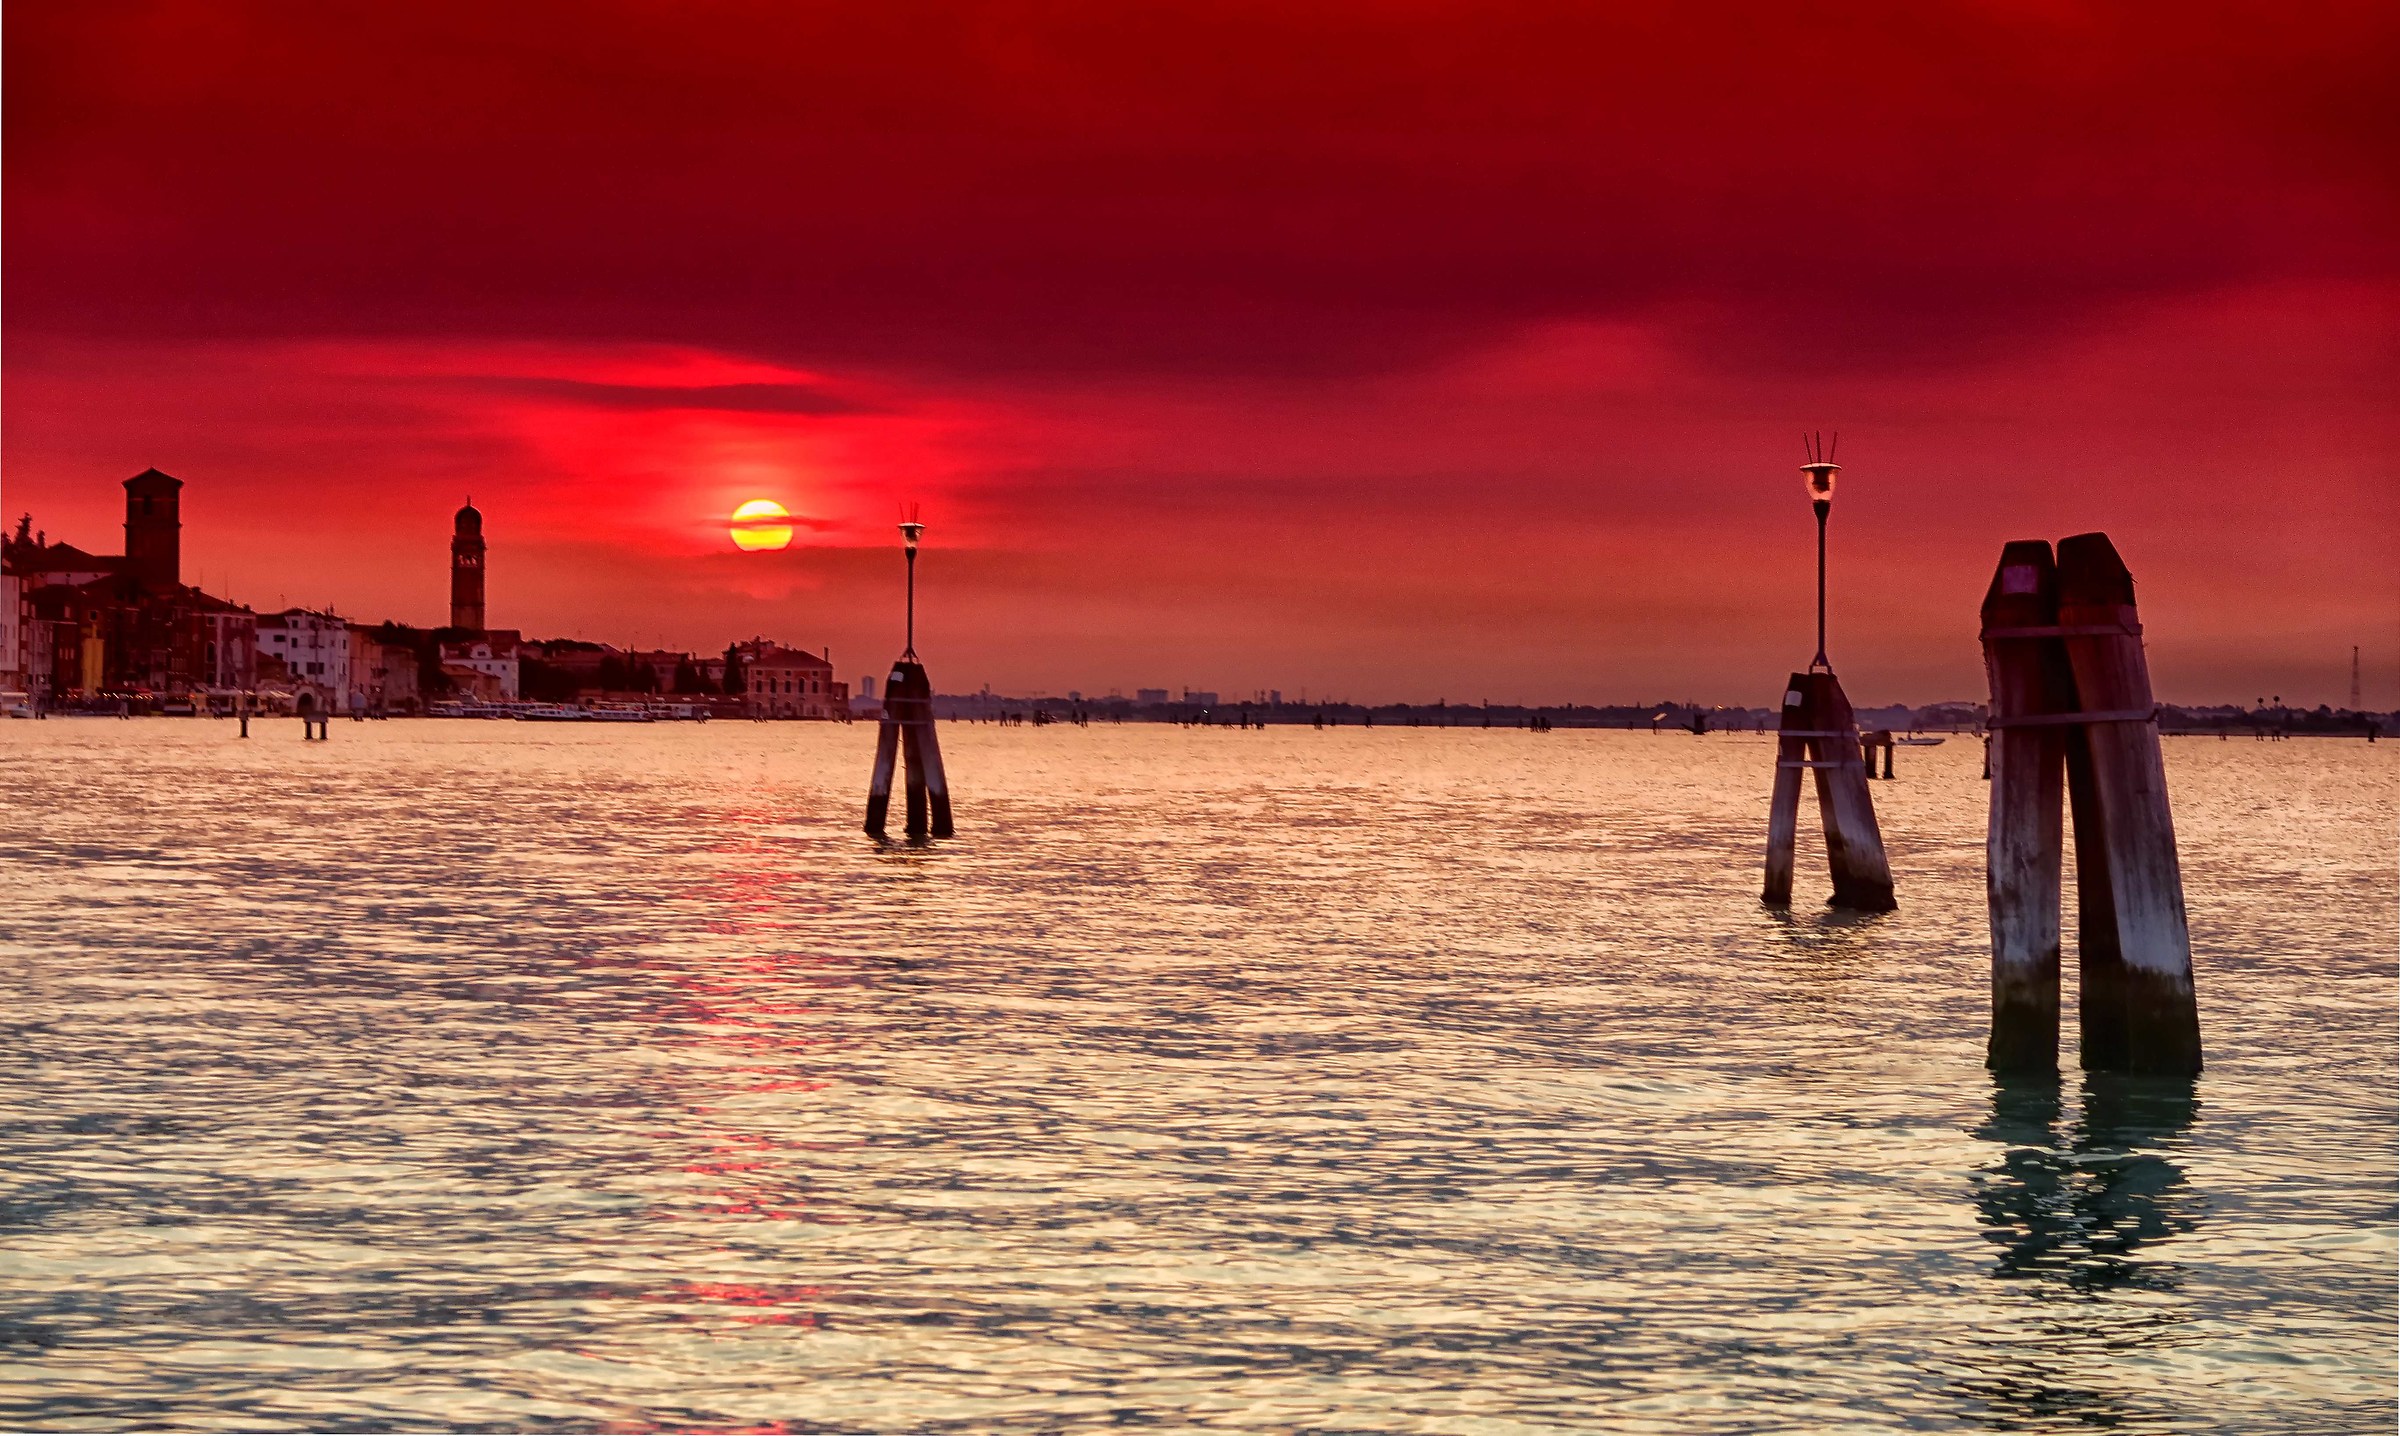 Sunset on the Lagoon of Venice...